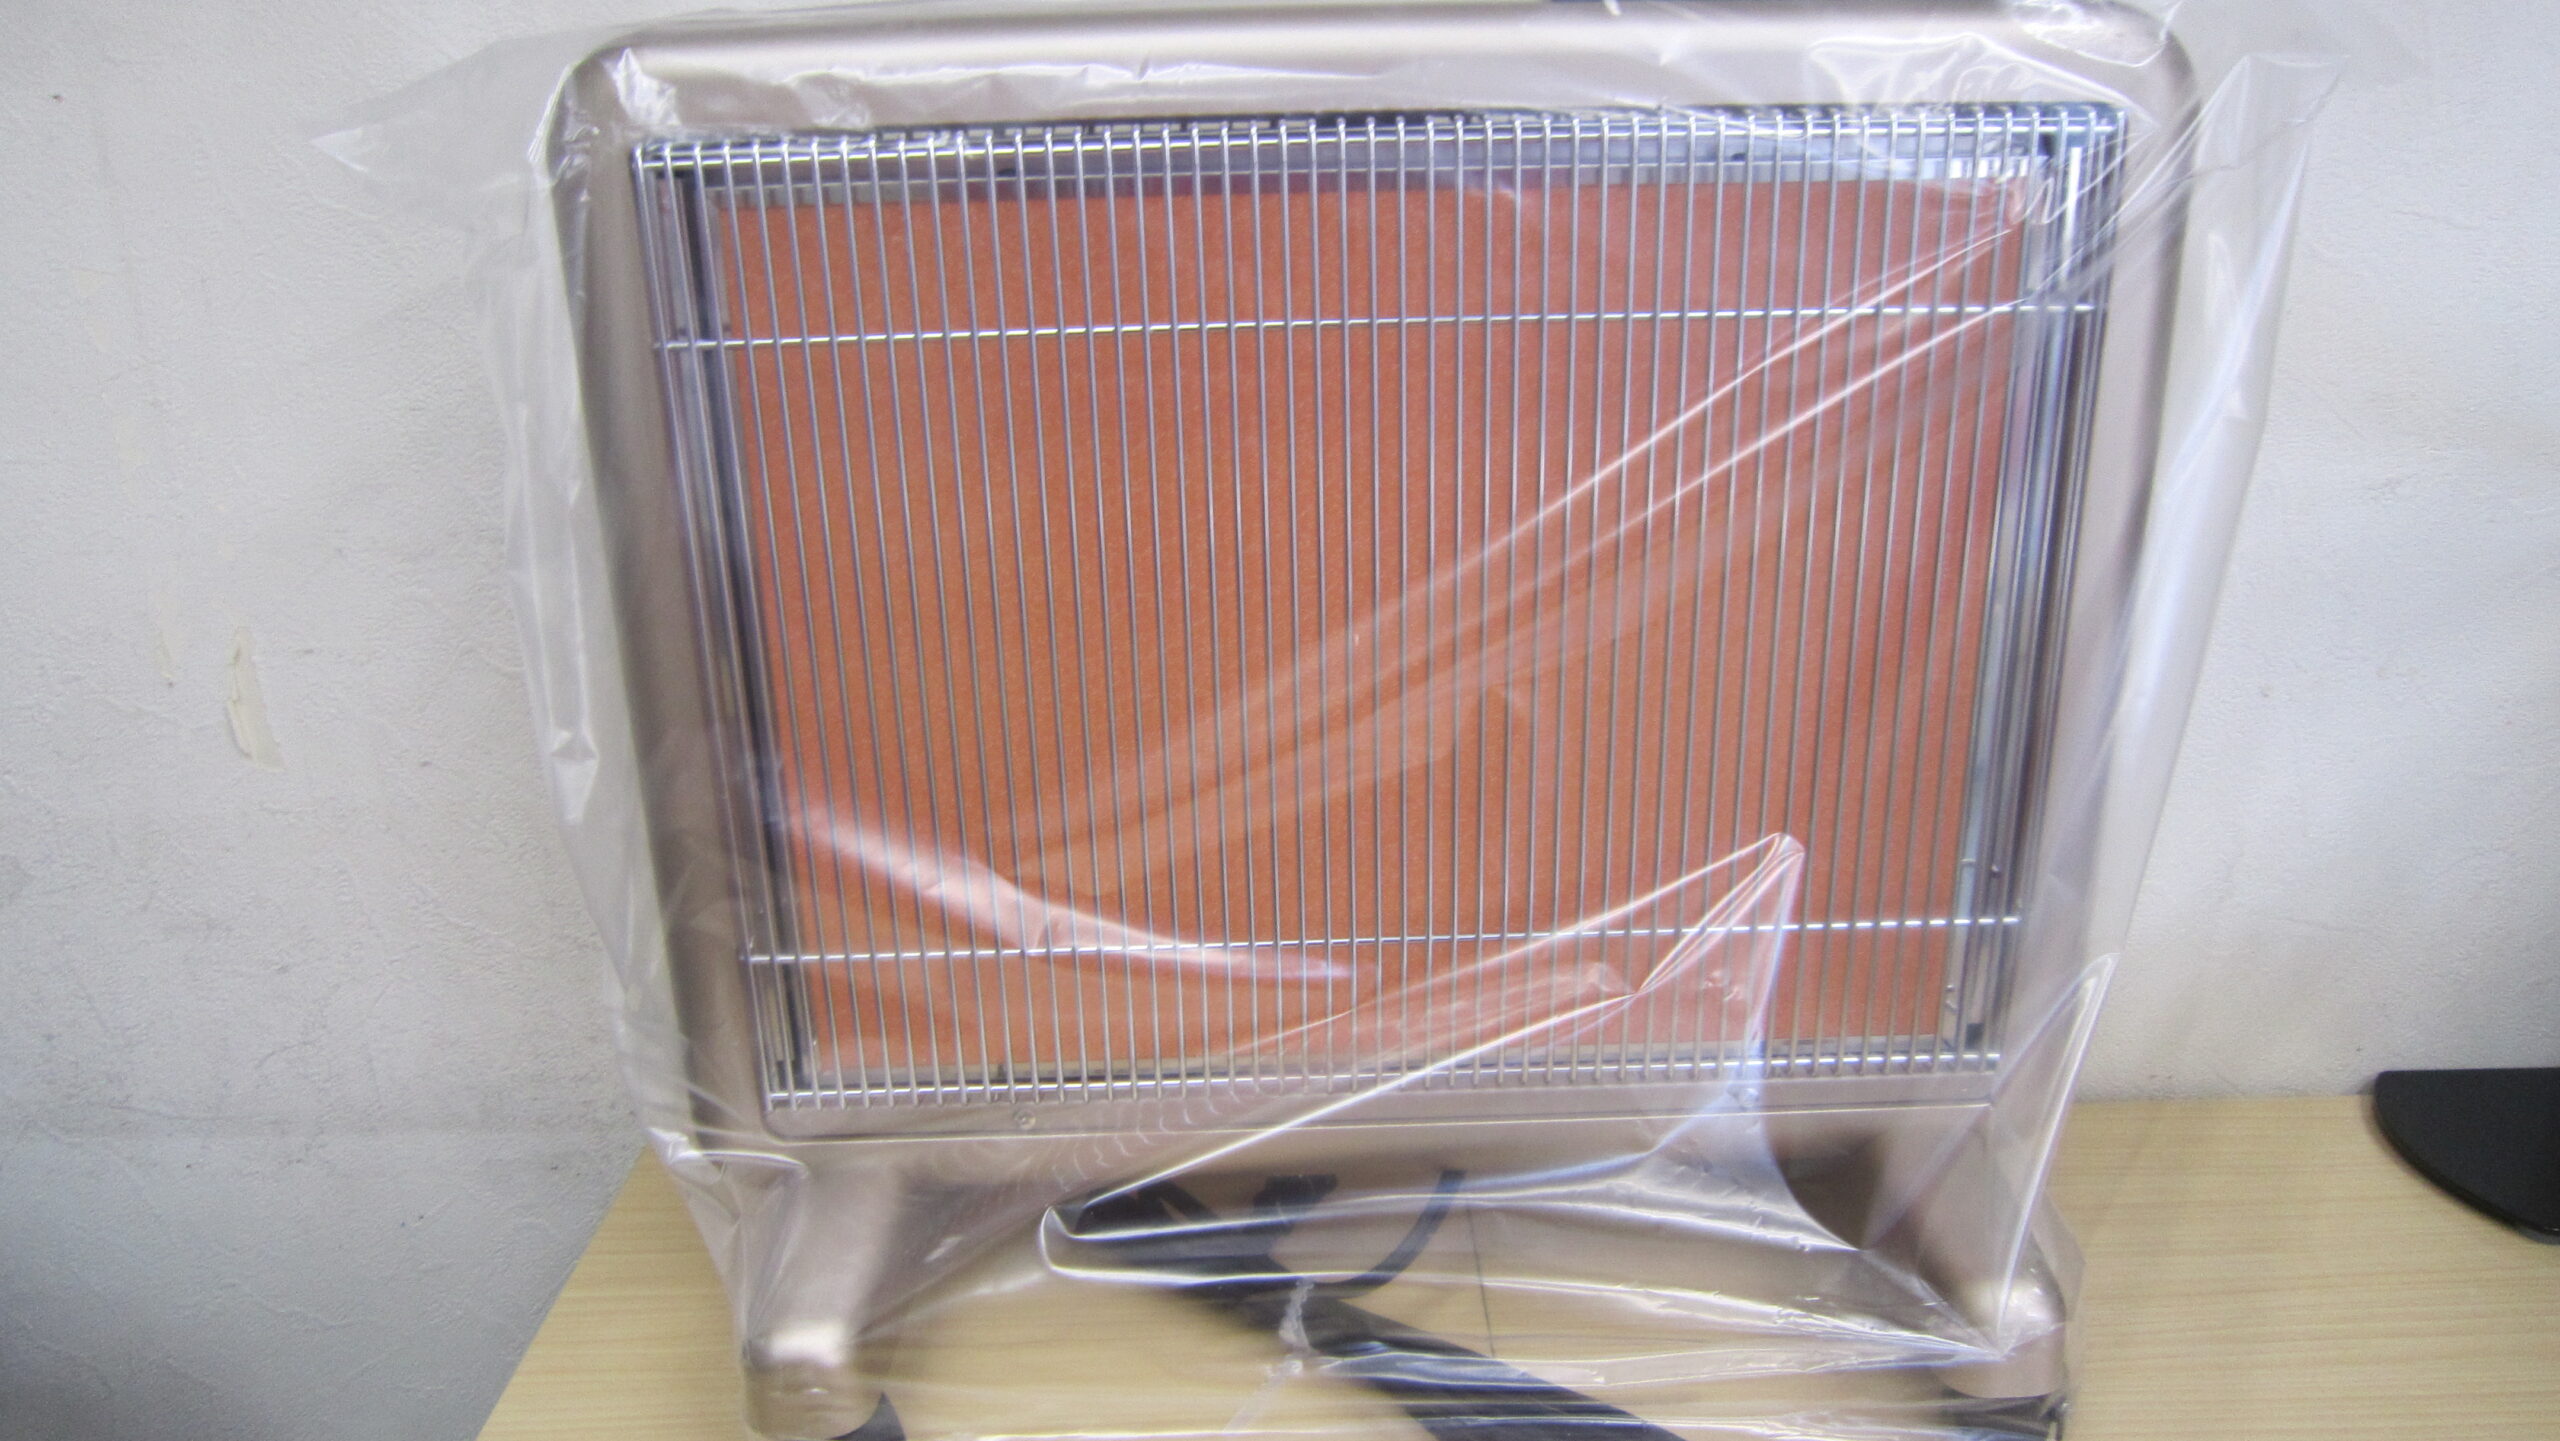 サンルミエ エクセラ7 遠赤外線暖房機 N700L-GR 未使用品お買取りしました【エコプラス小倉北店】 | 北九州のリサイクルショップ&質屋